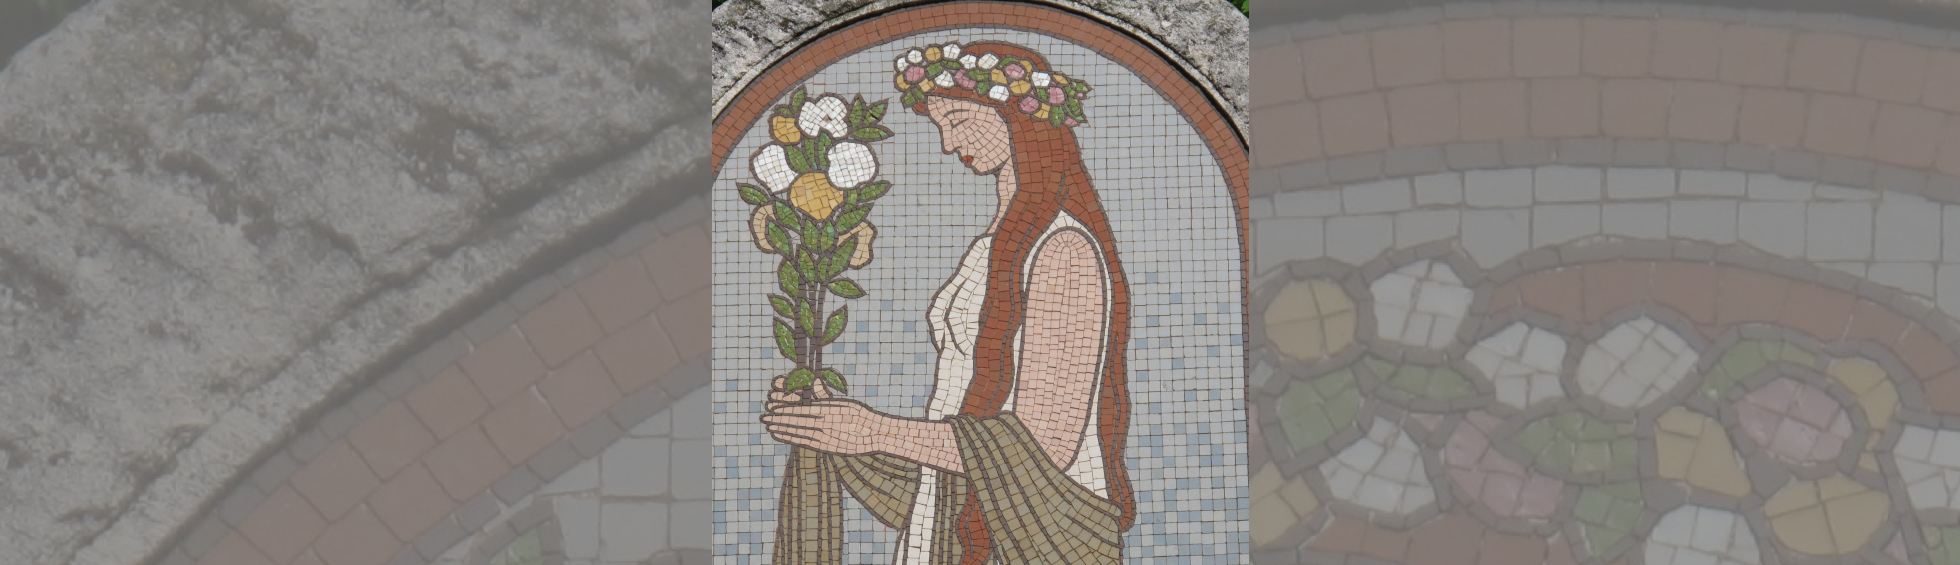 Une jeune fille couronnée de fleur tient un bouquet dans ses mains jointes ,les bras sont reliés par un chale.